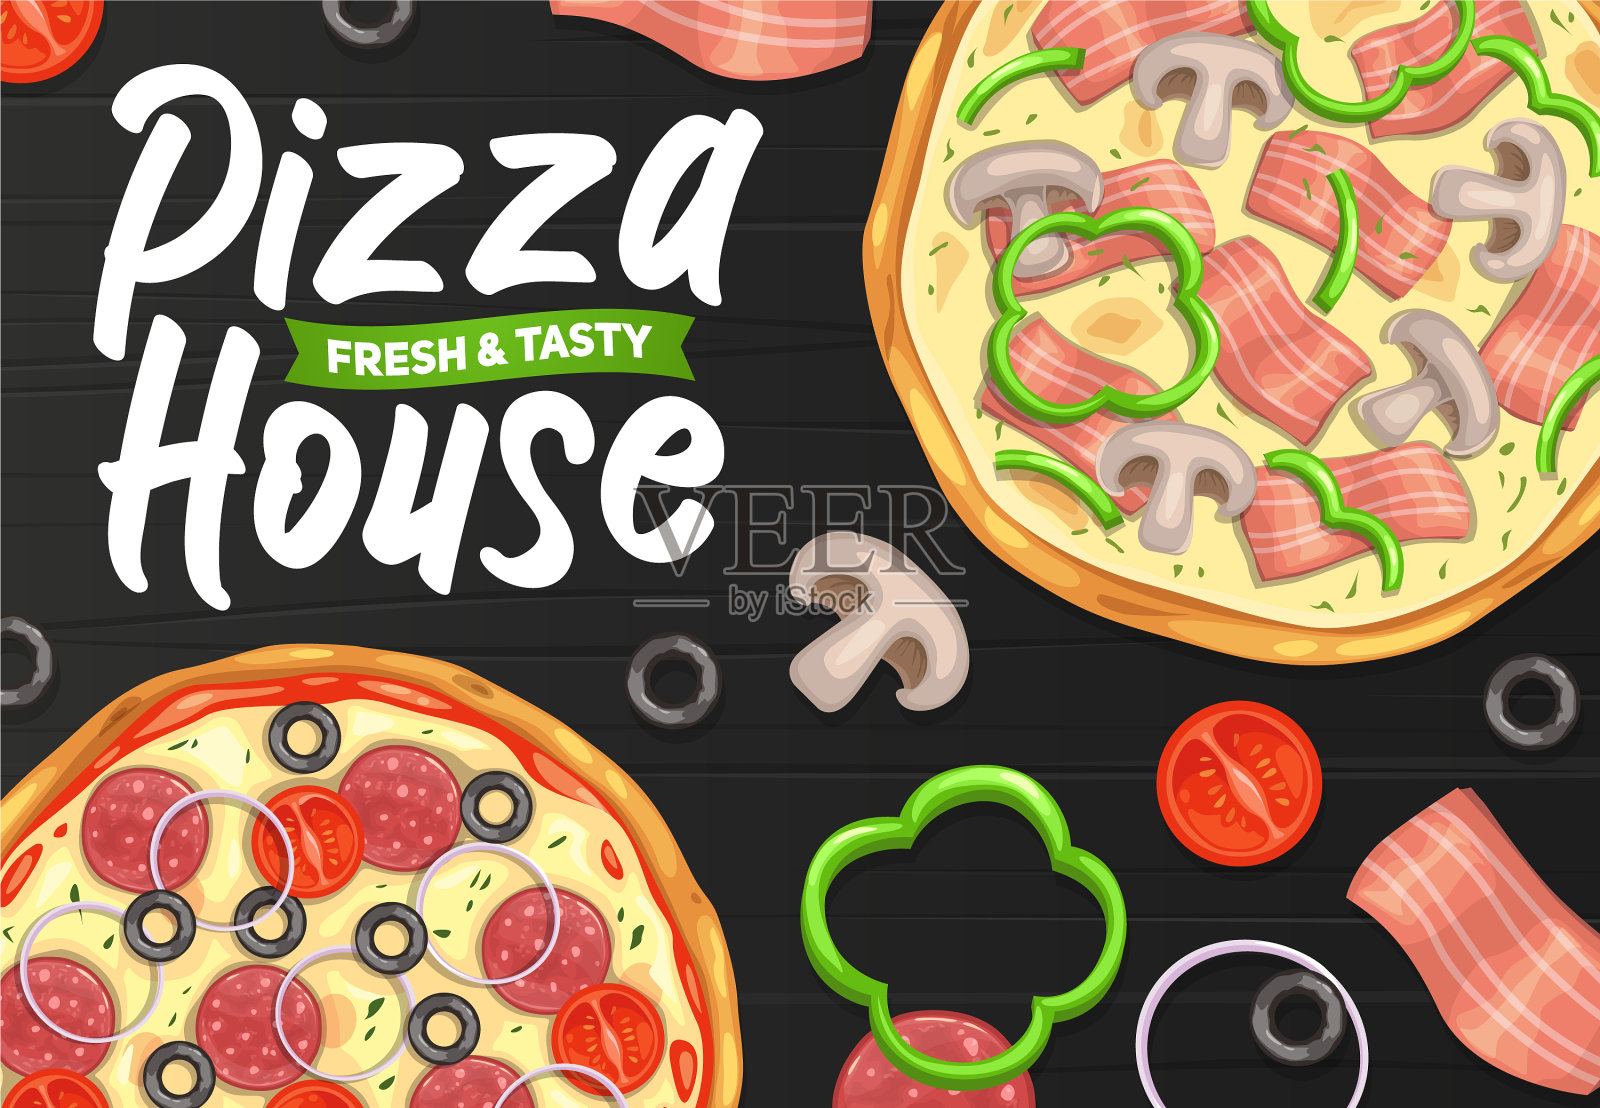 比萨和比萨意大利餐厅的快餐设计模板素材